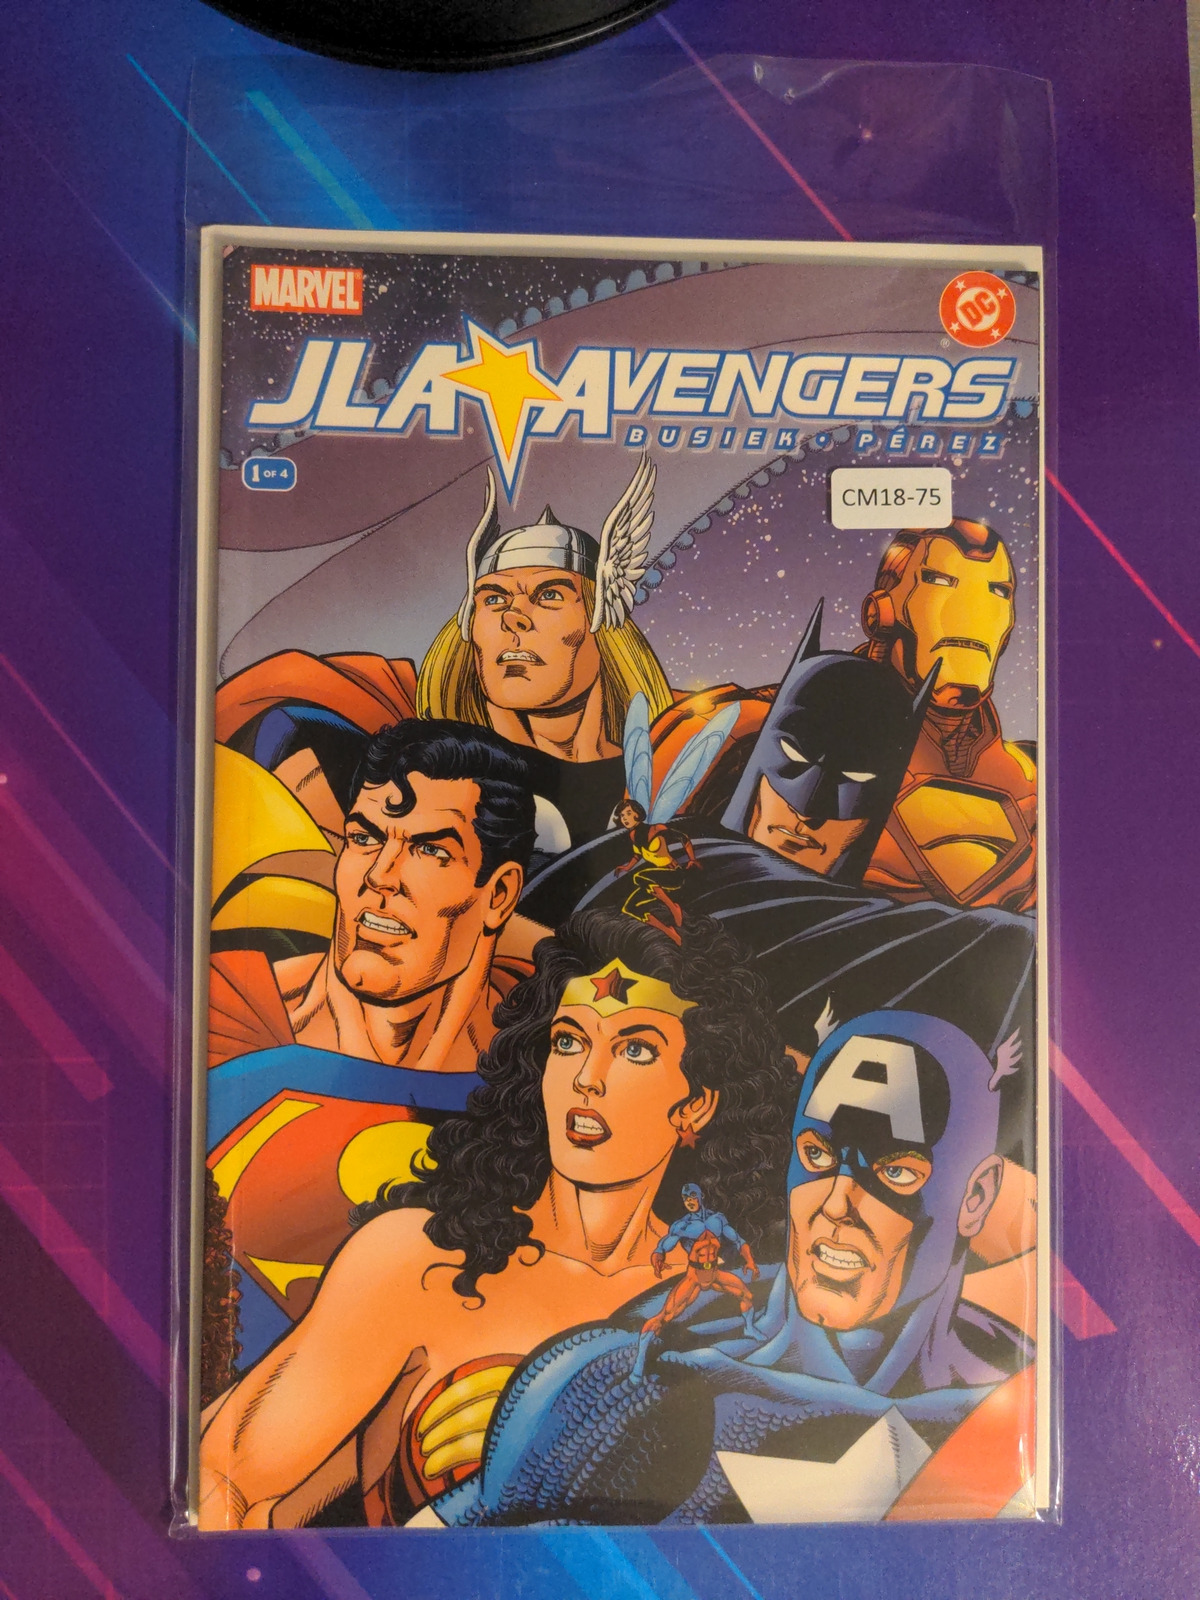 JLA / AVENGERS #1 9.0 MARVEL COMIC BOOK CM18-75